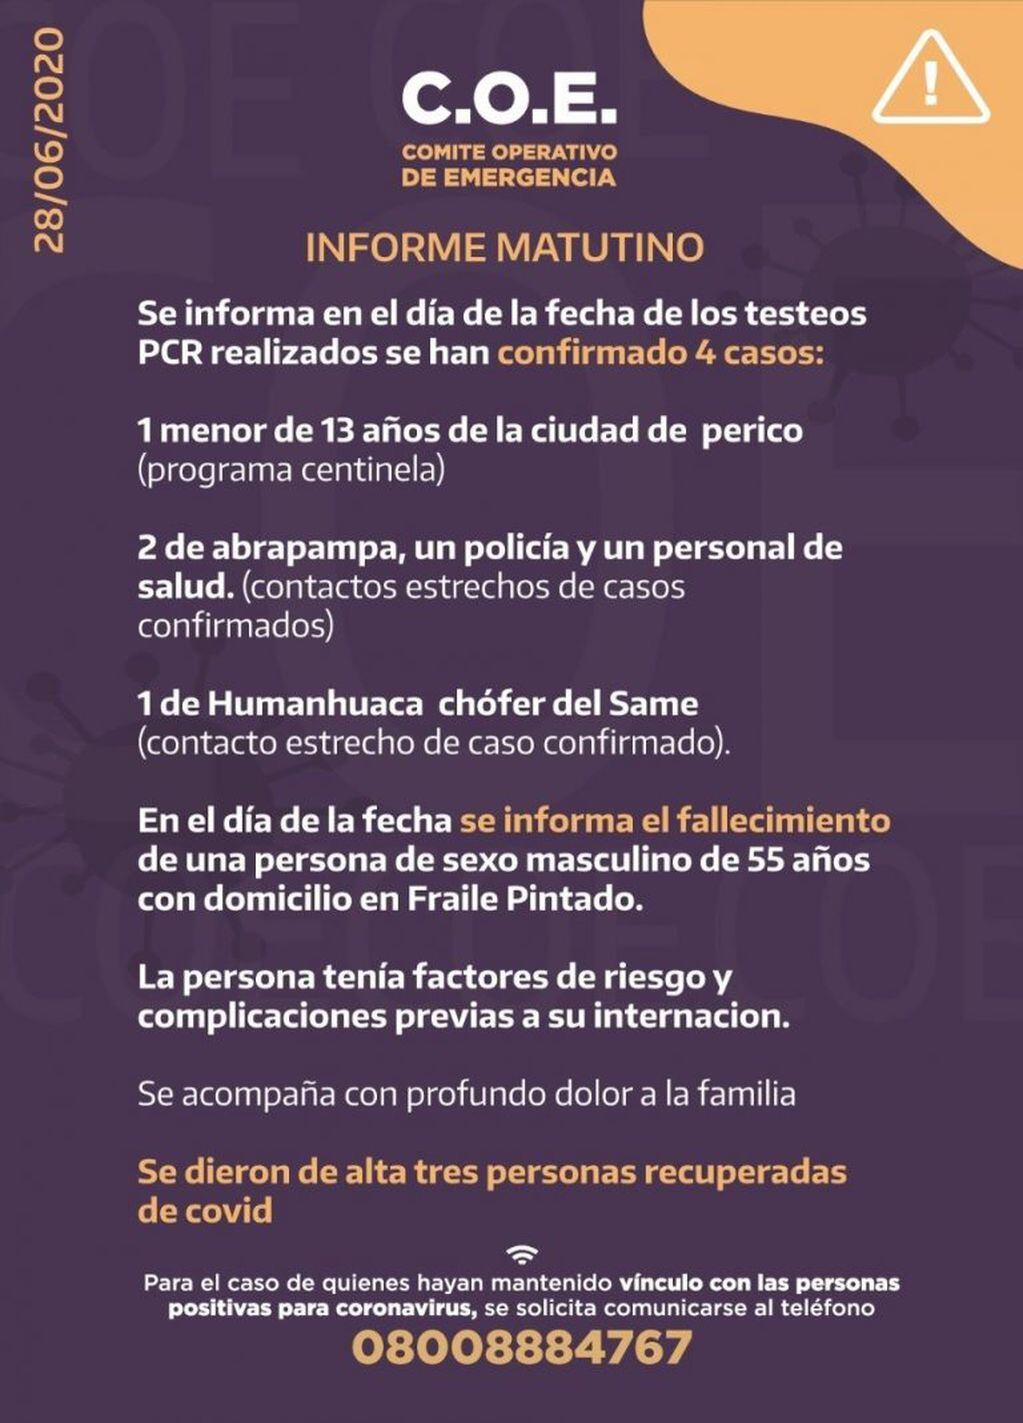 El informe parcial del día, emitido por el COE Jujuy.